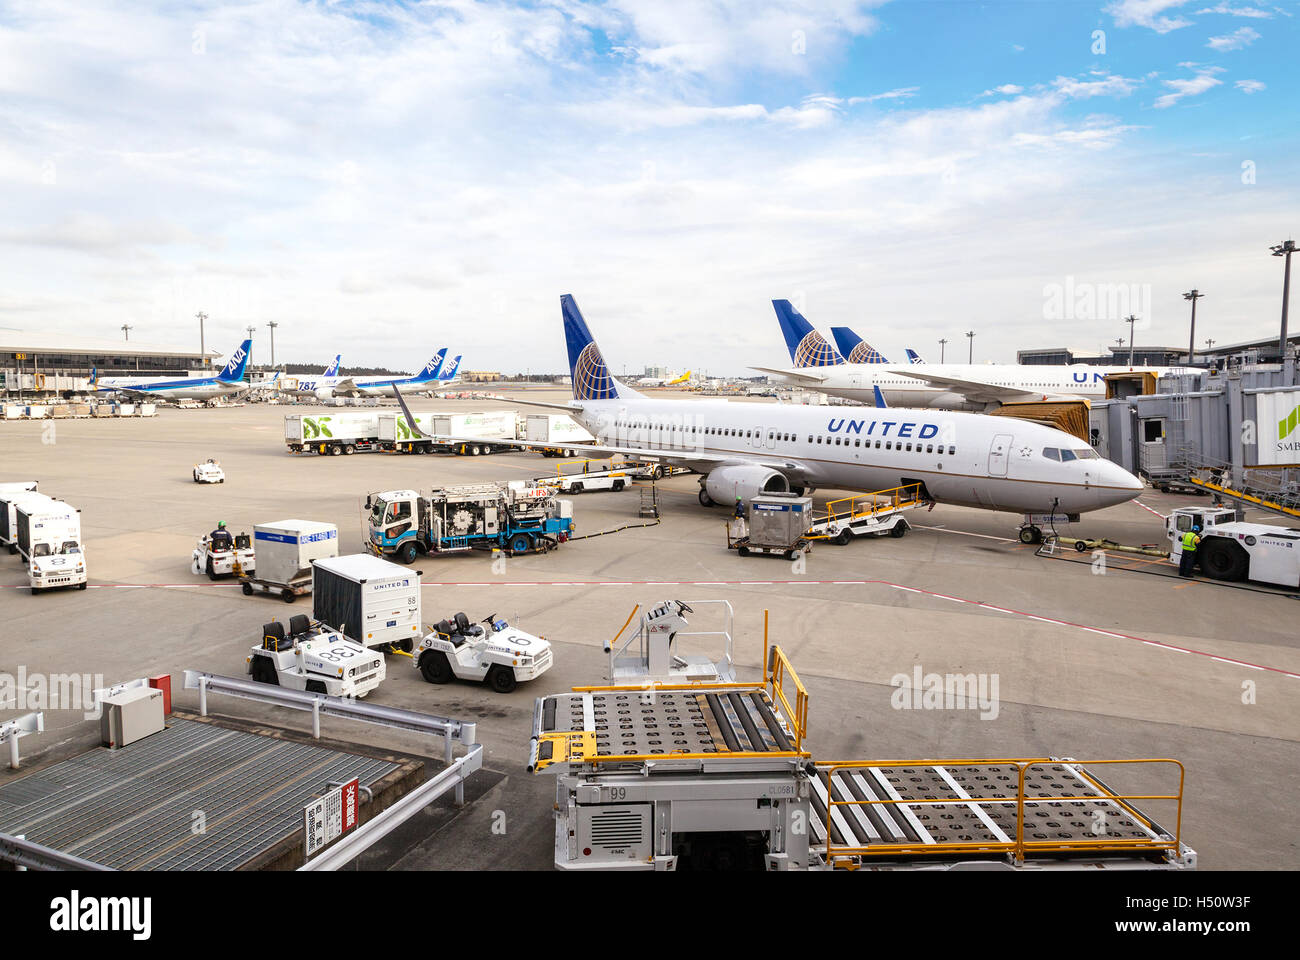 TOKYO - Le 6 mars : une flotte de United Airlines en cours d'entretien des avions sur le tarmac de l'aéroport de Narita, le 6 mars 2015. Banque D'Images